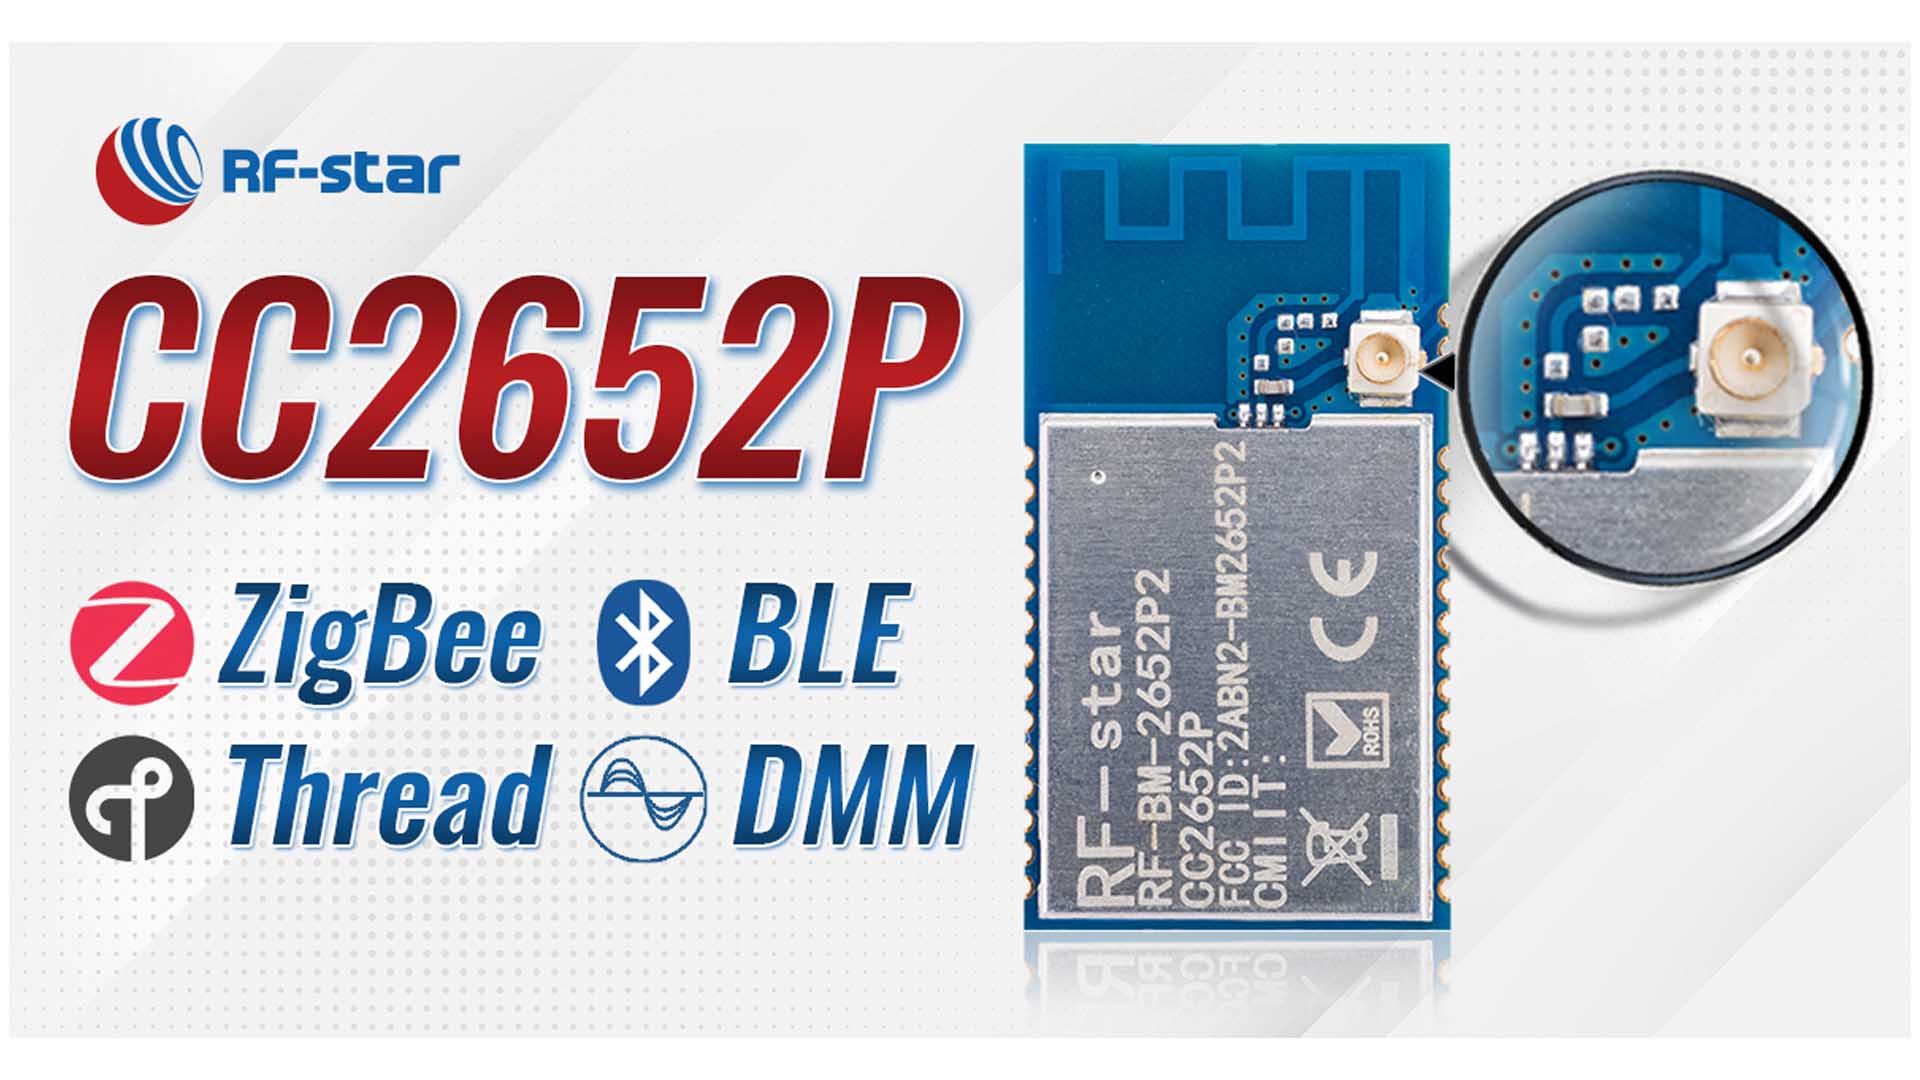 rfstar CC2652P мультипротокольный модуль 2.4 ГГц RF Zigbee BLE5.1 802.15.4 TI CC2652P для умного дома